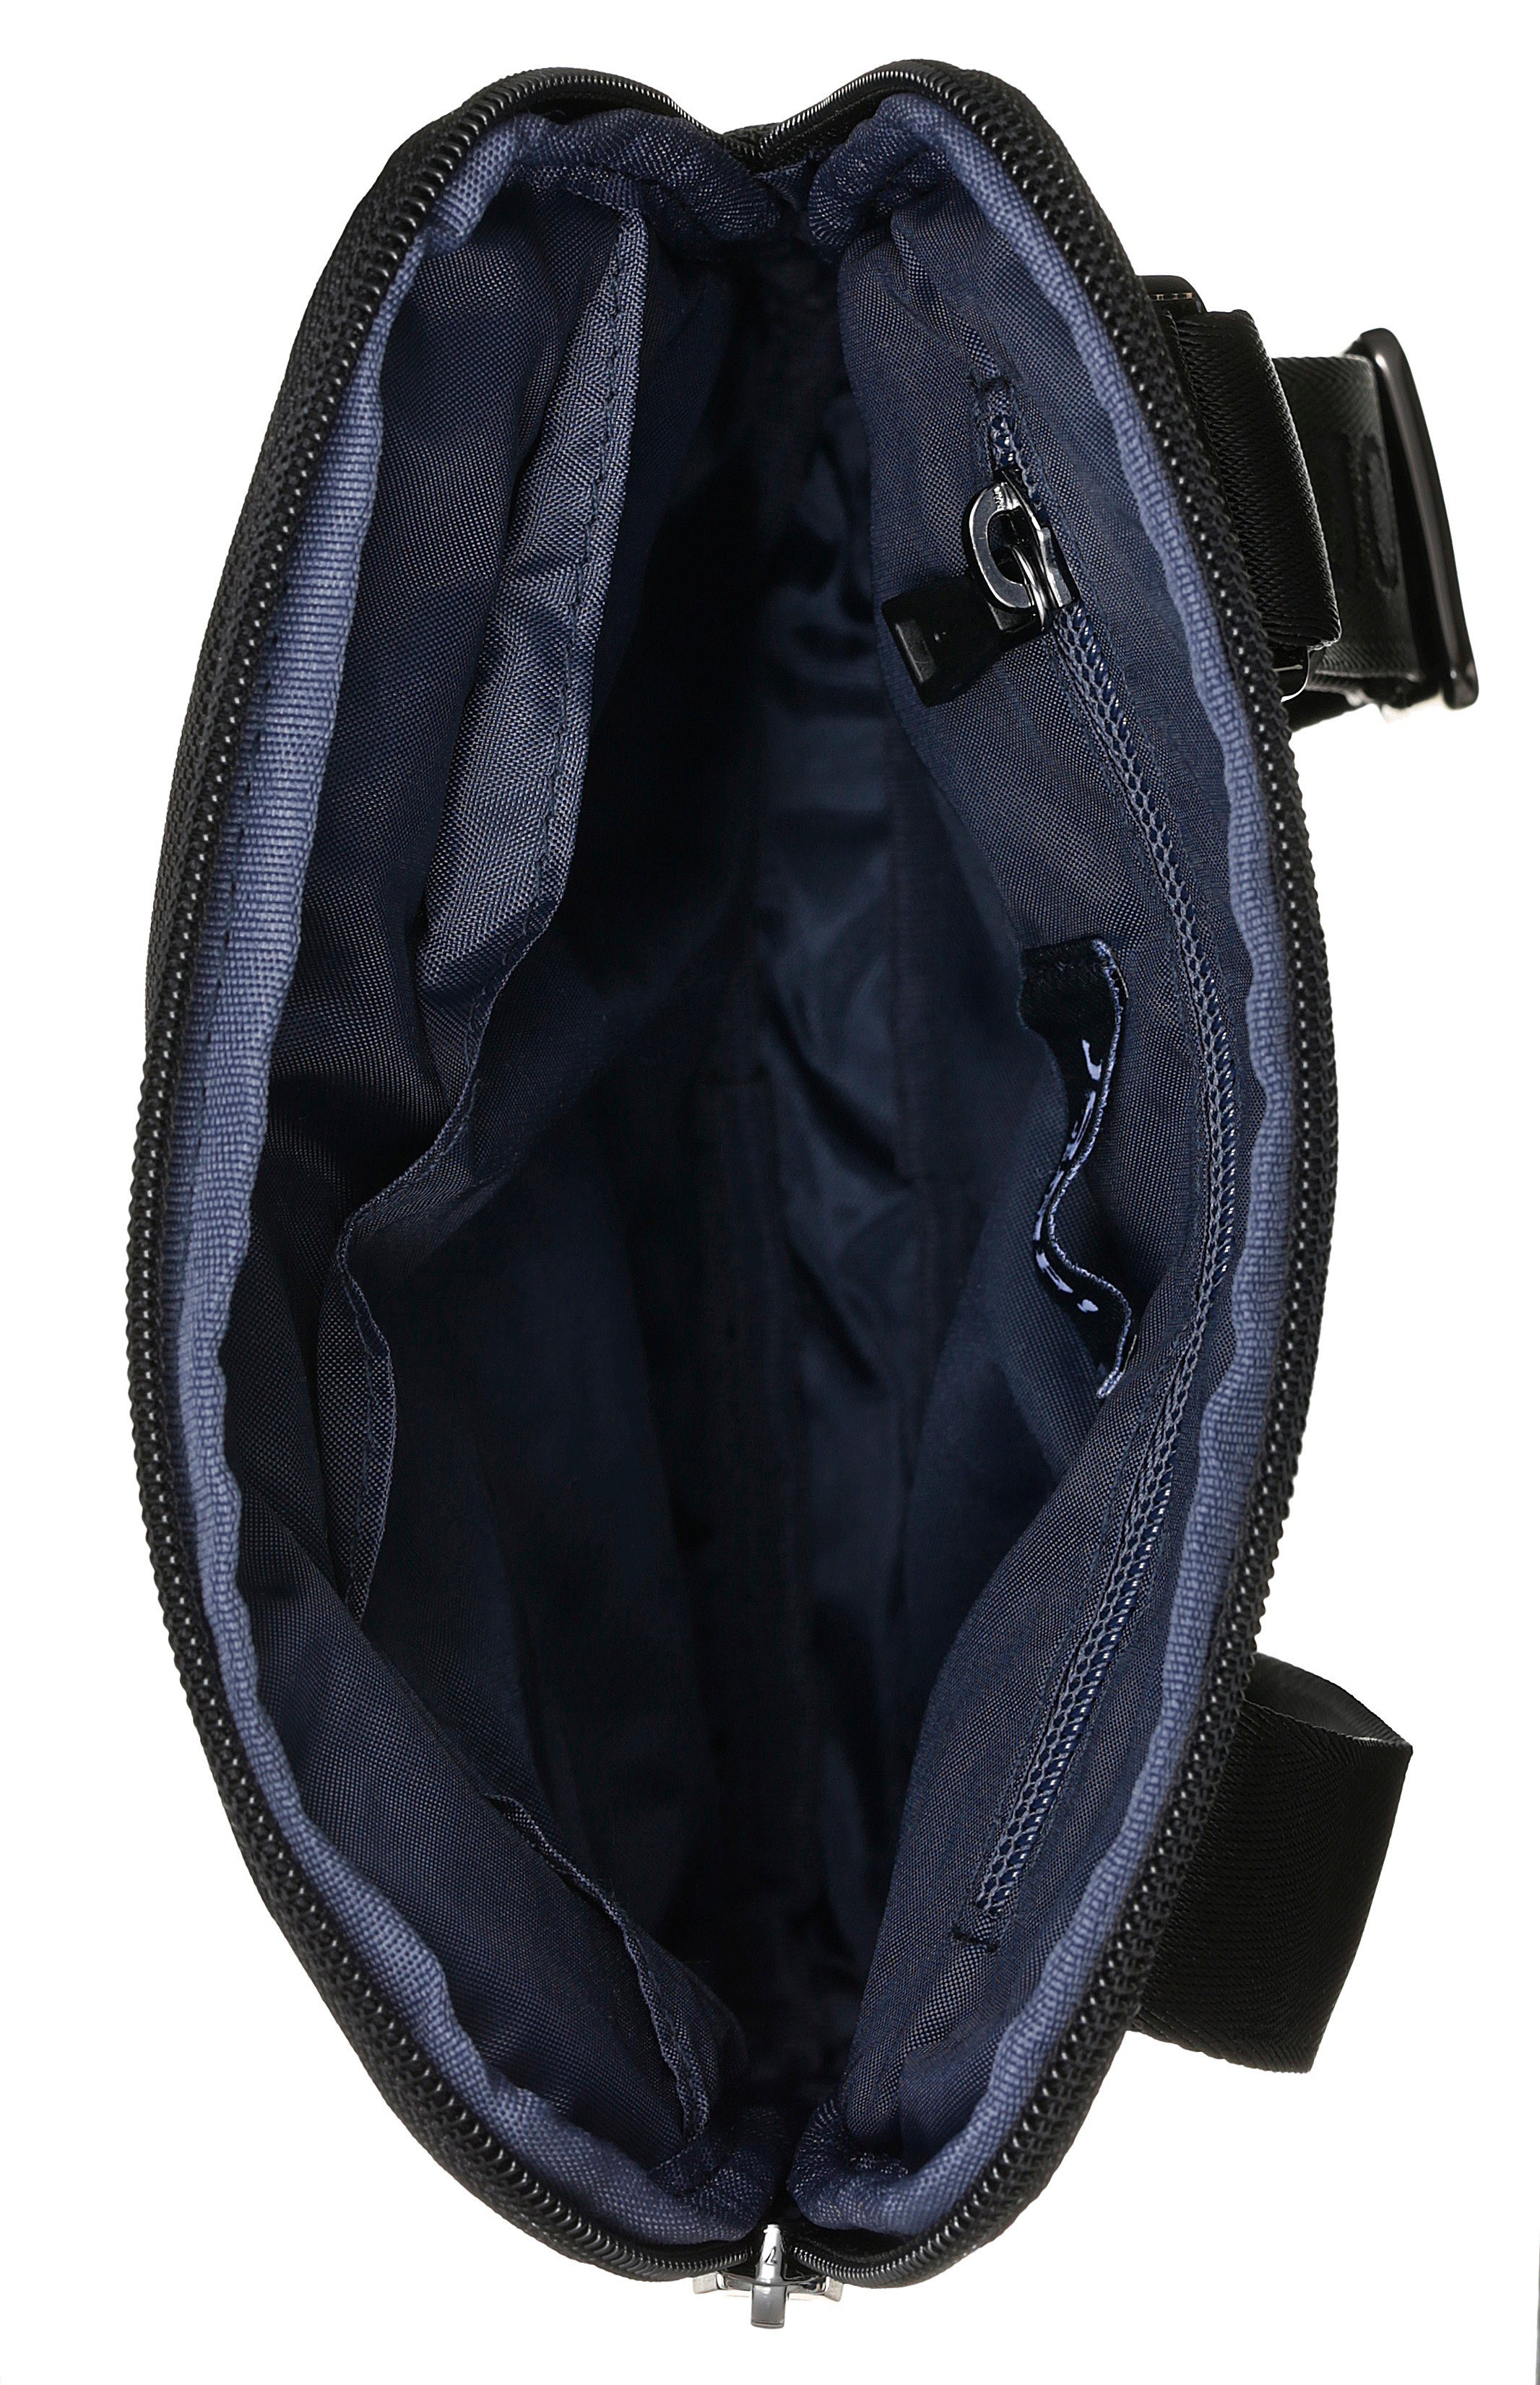 Stickerei modica Jeans schöner Joop shoulderbag schwarz mit Logo liam Umhängetasche xsvz,